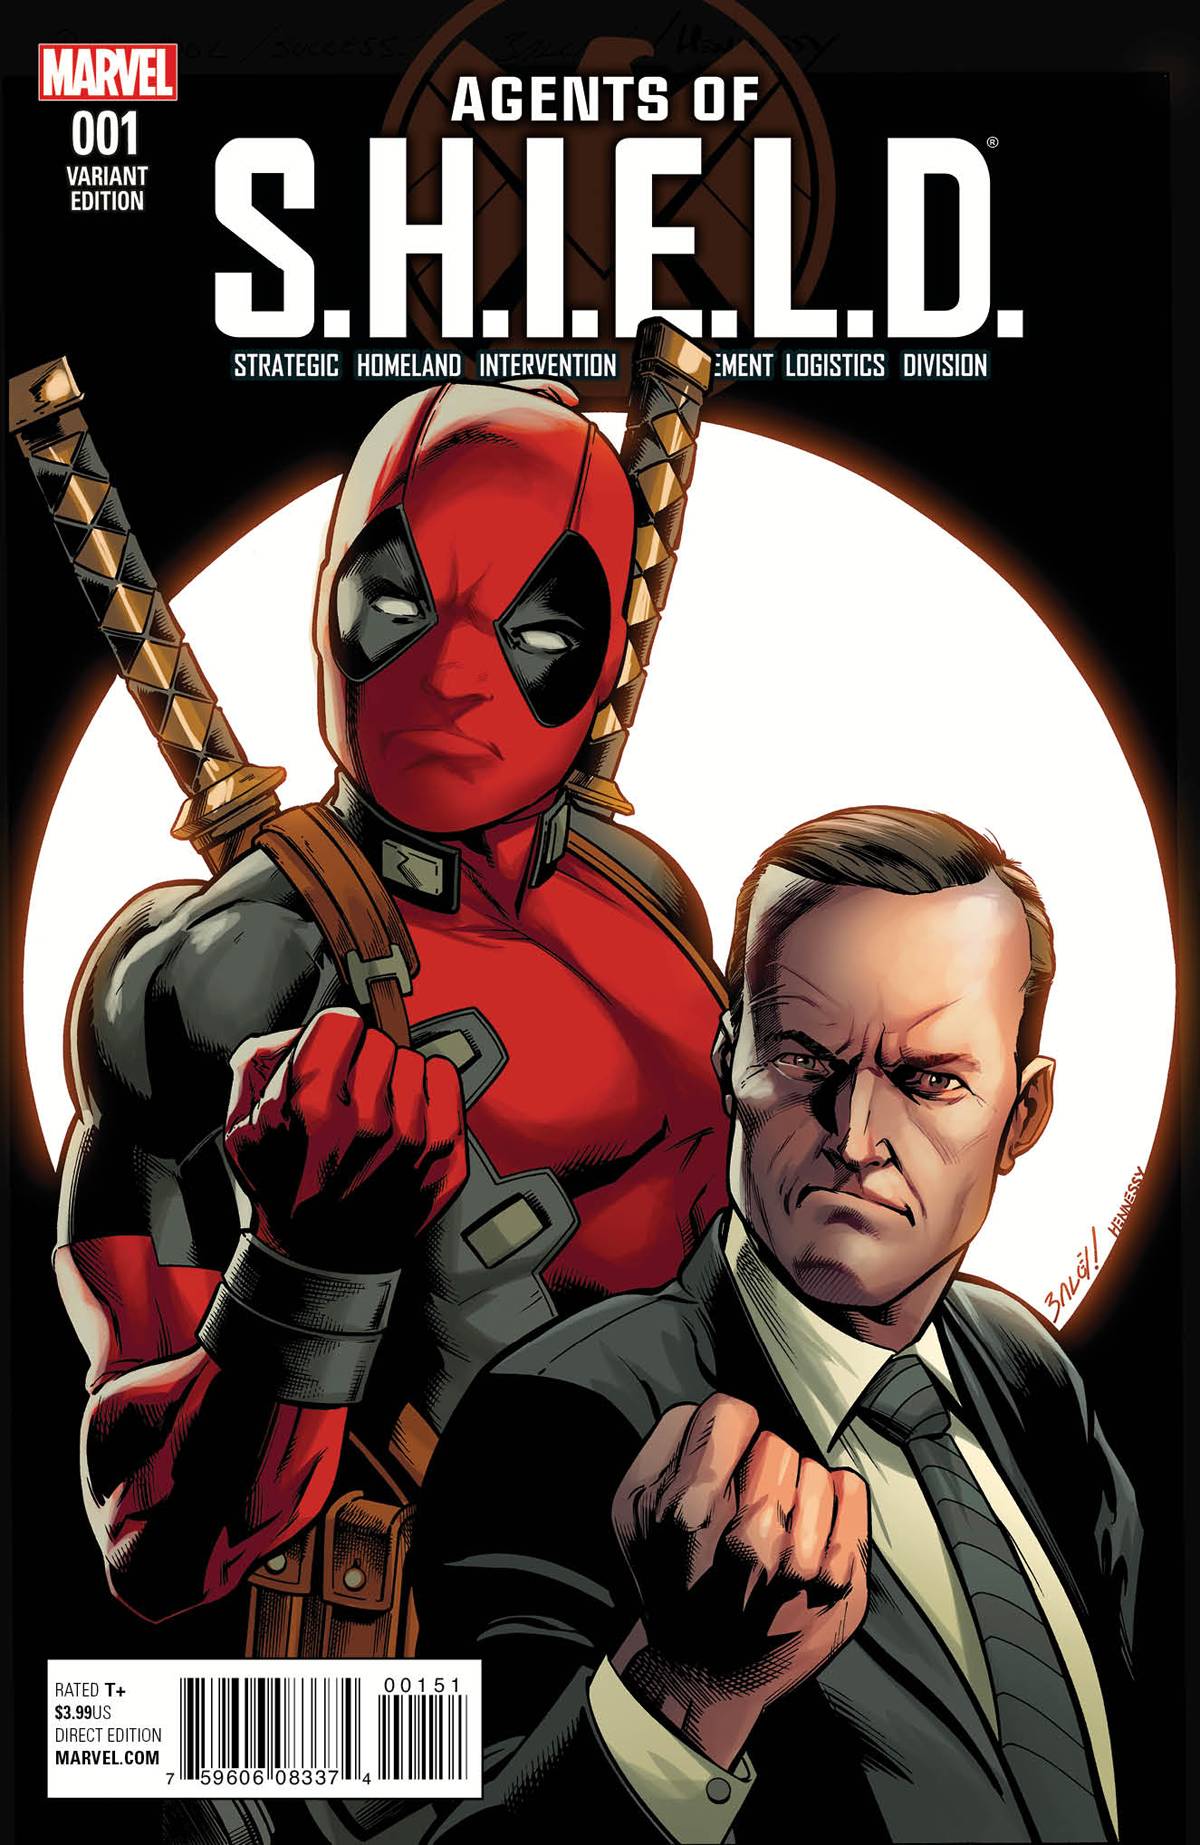 Image Agents Of SHIELD Vol 1 1 Deadpool Variantjpg Marvel